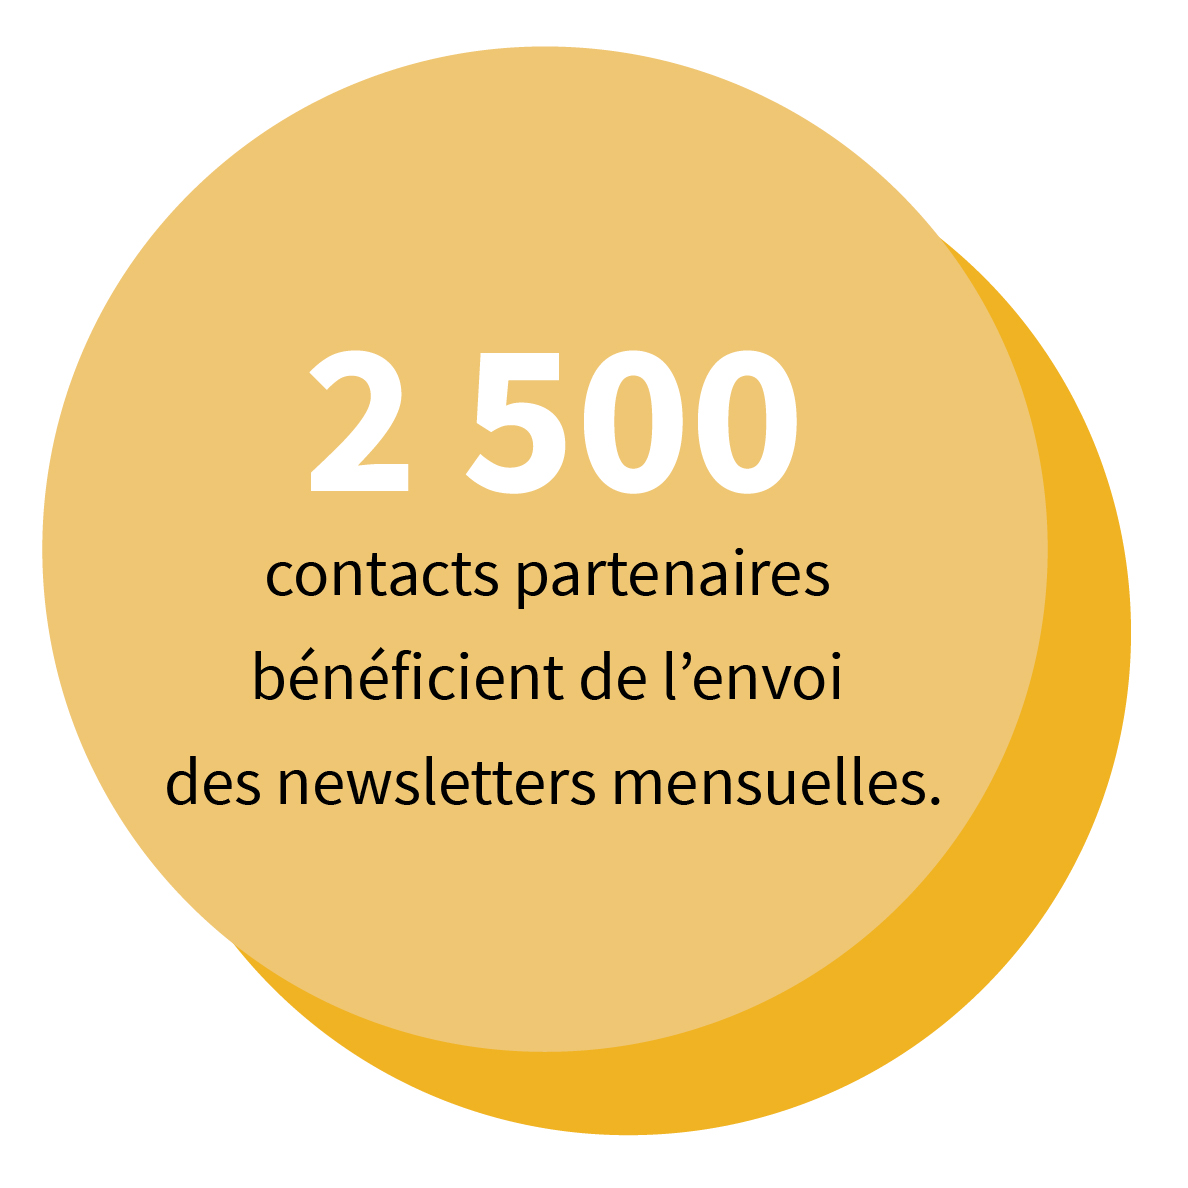 2 500 contacts partenaires bénéficient de l’envoi des newsletters mensuelles.